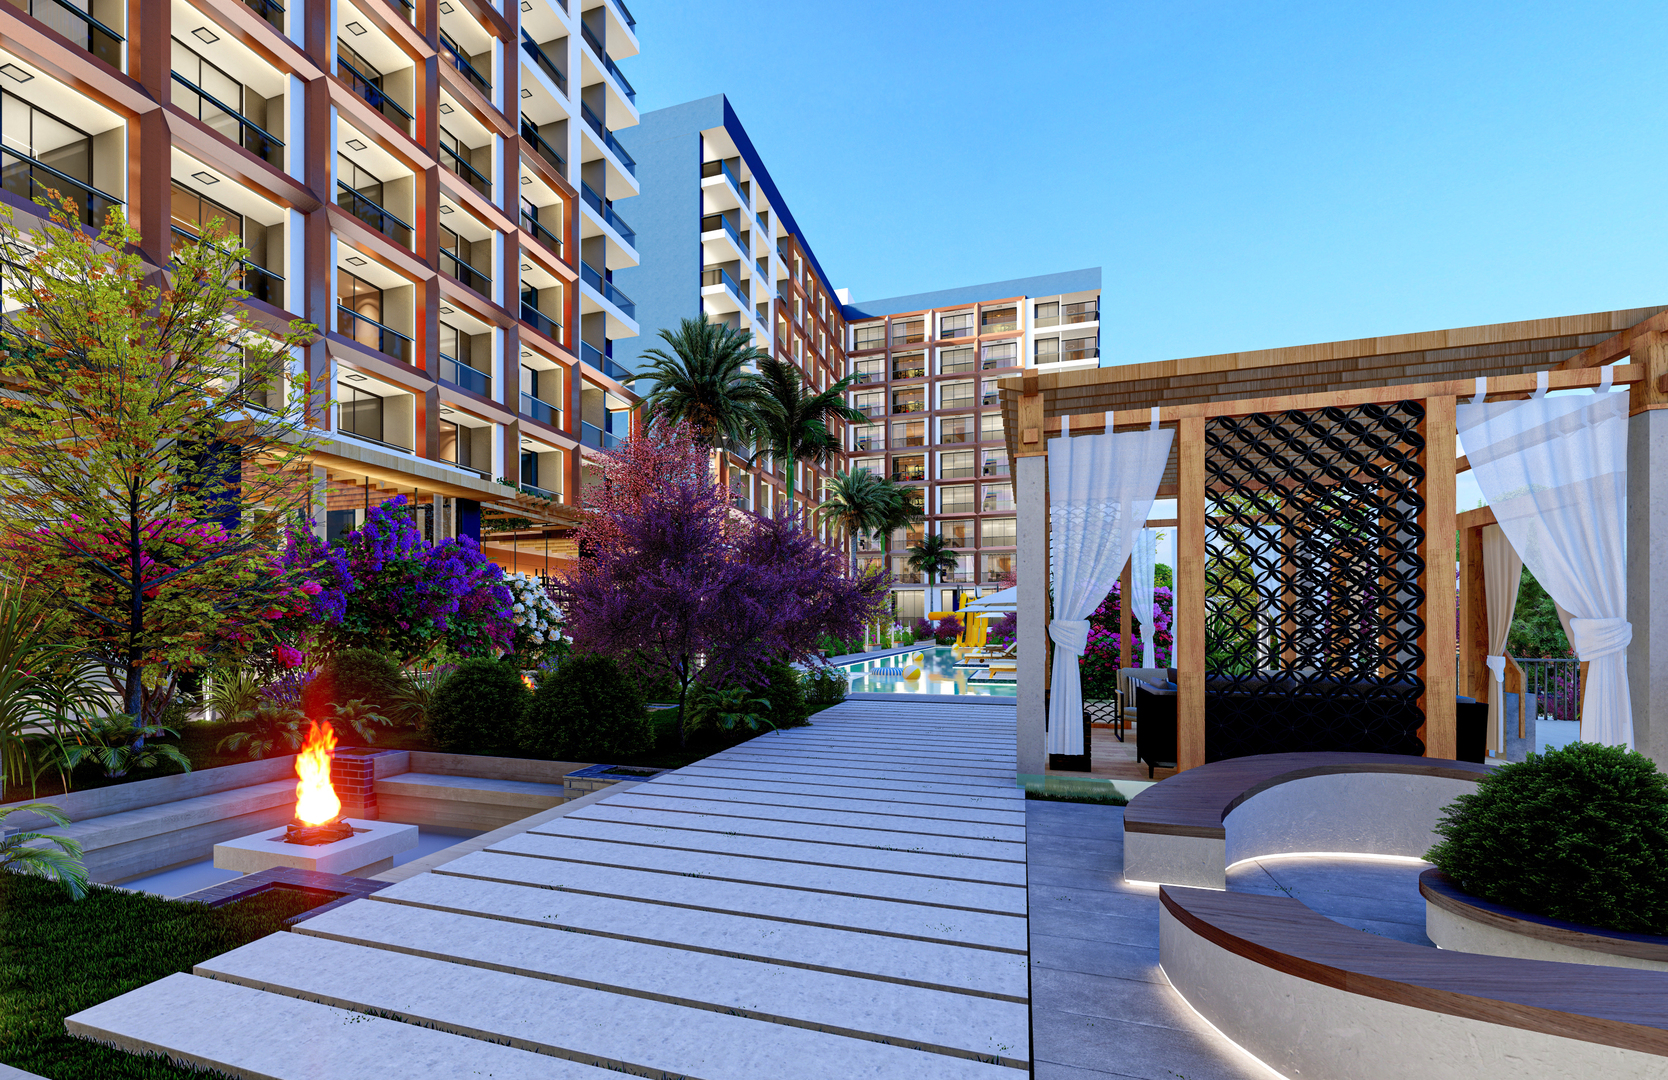 Апартаменты в жилом комплексе гостиничного типа по уникально низким ценам от 39 000 евро